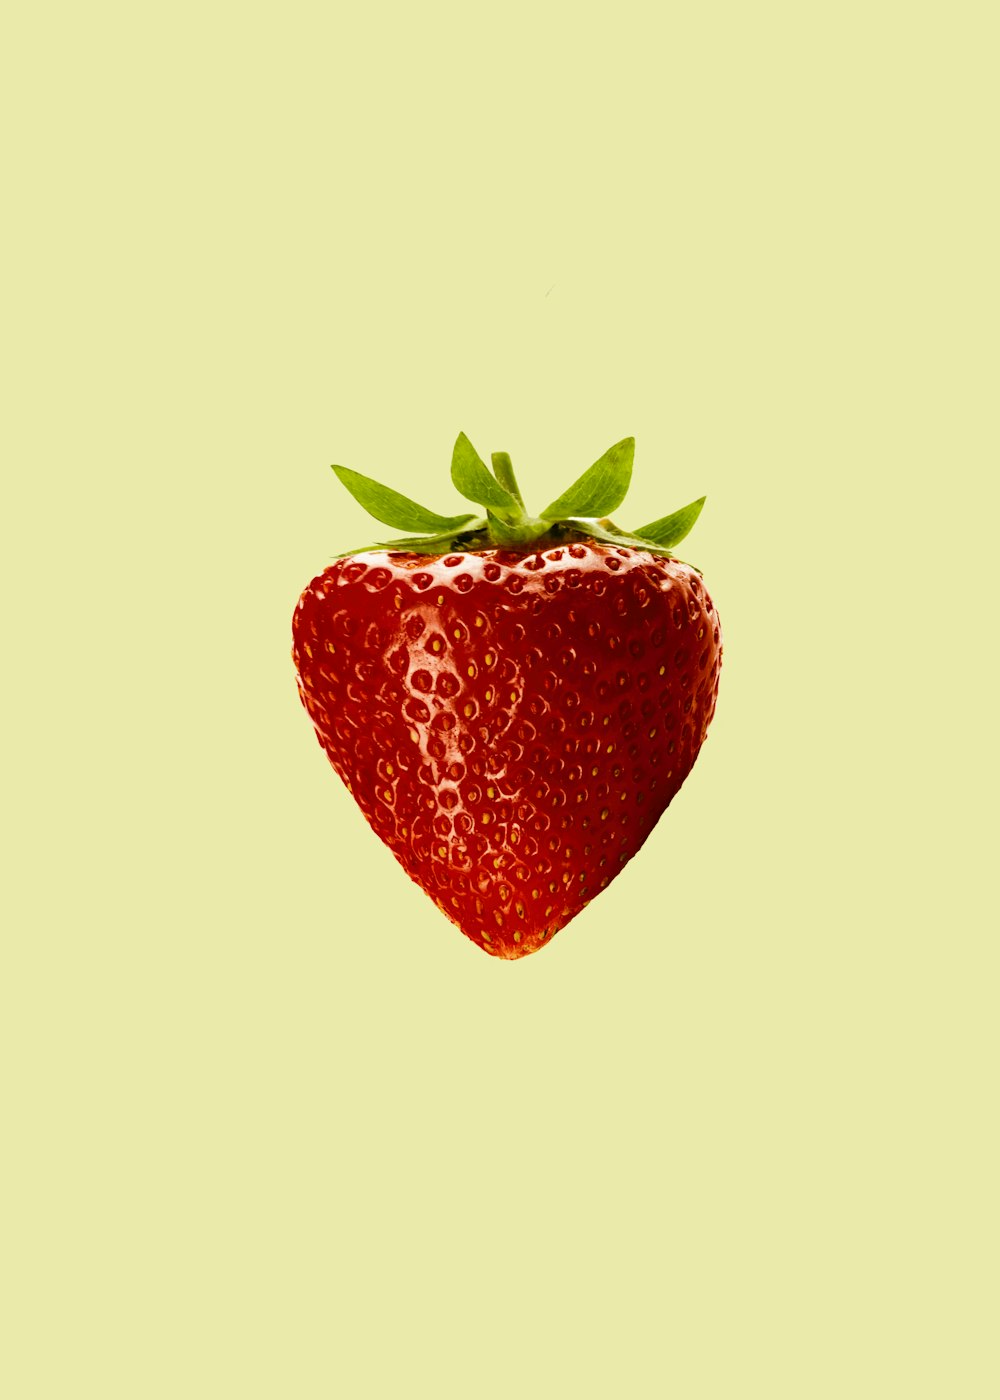 Fruta vermelha do morango com fundo branco